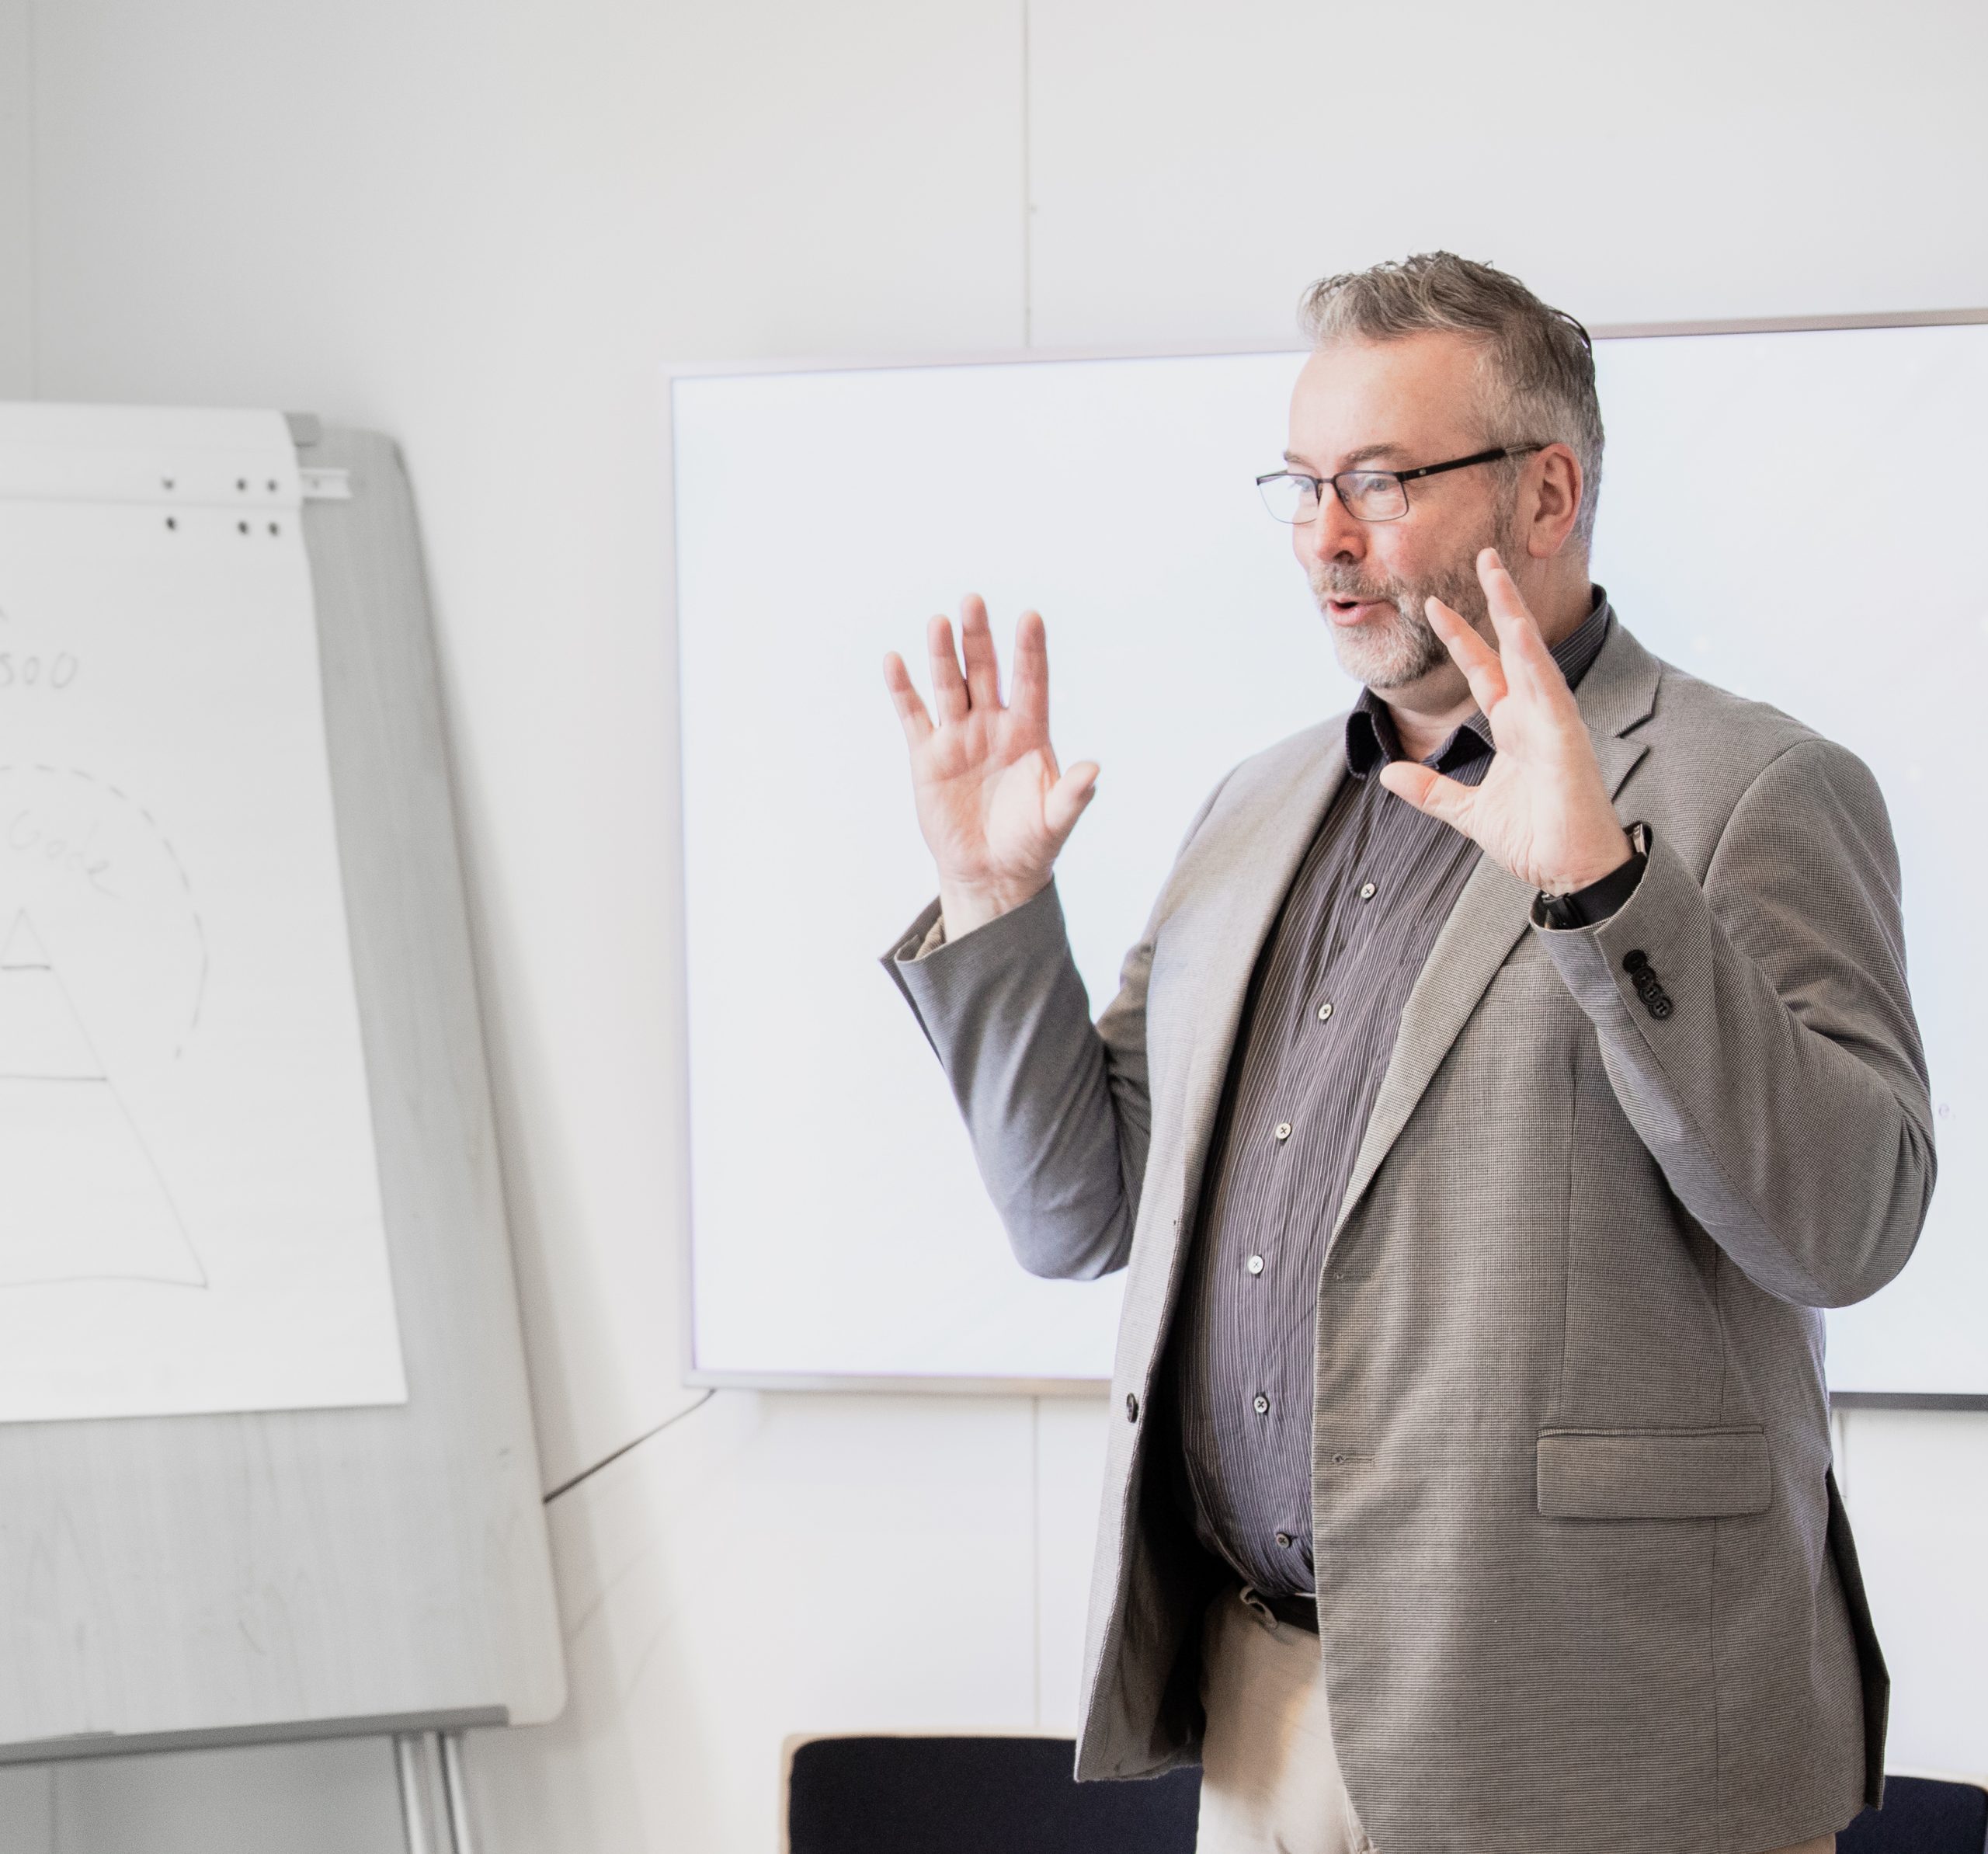 Bjørn Skovli fra Oppover holder seminar i samarbeid med Innovasjon Gardermoen